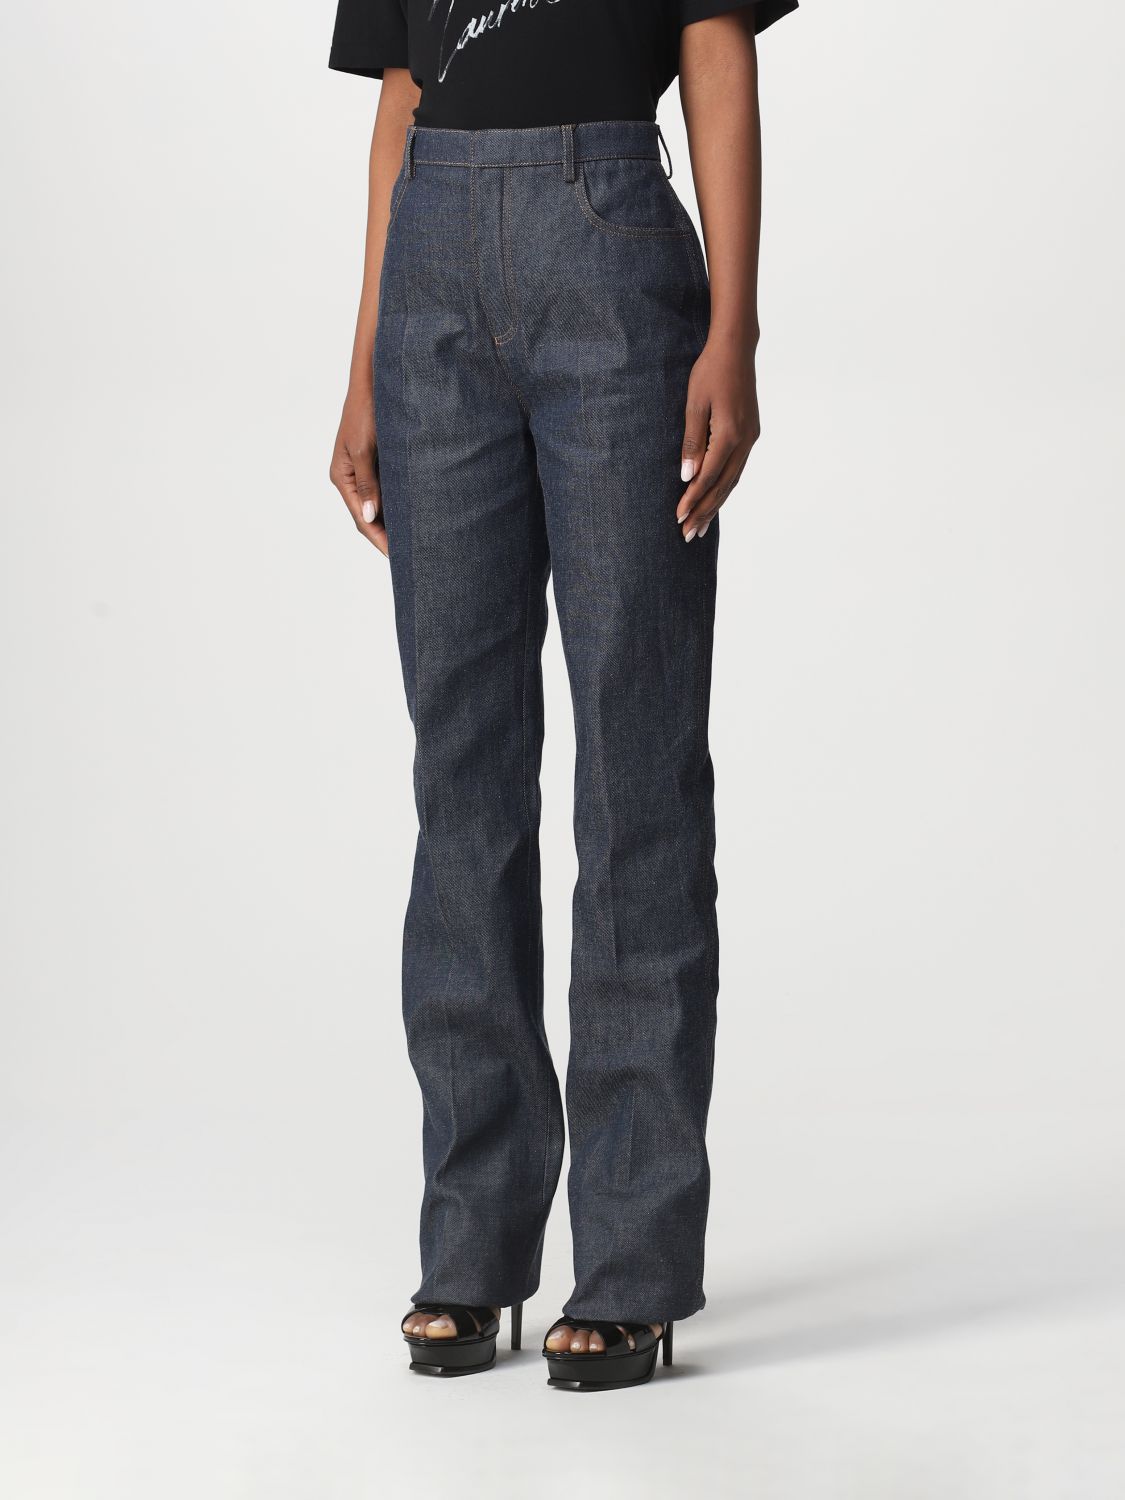 Jeans Saint Laurent: Saint Laurent cotton denim jeans denim 4